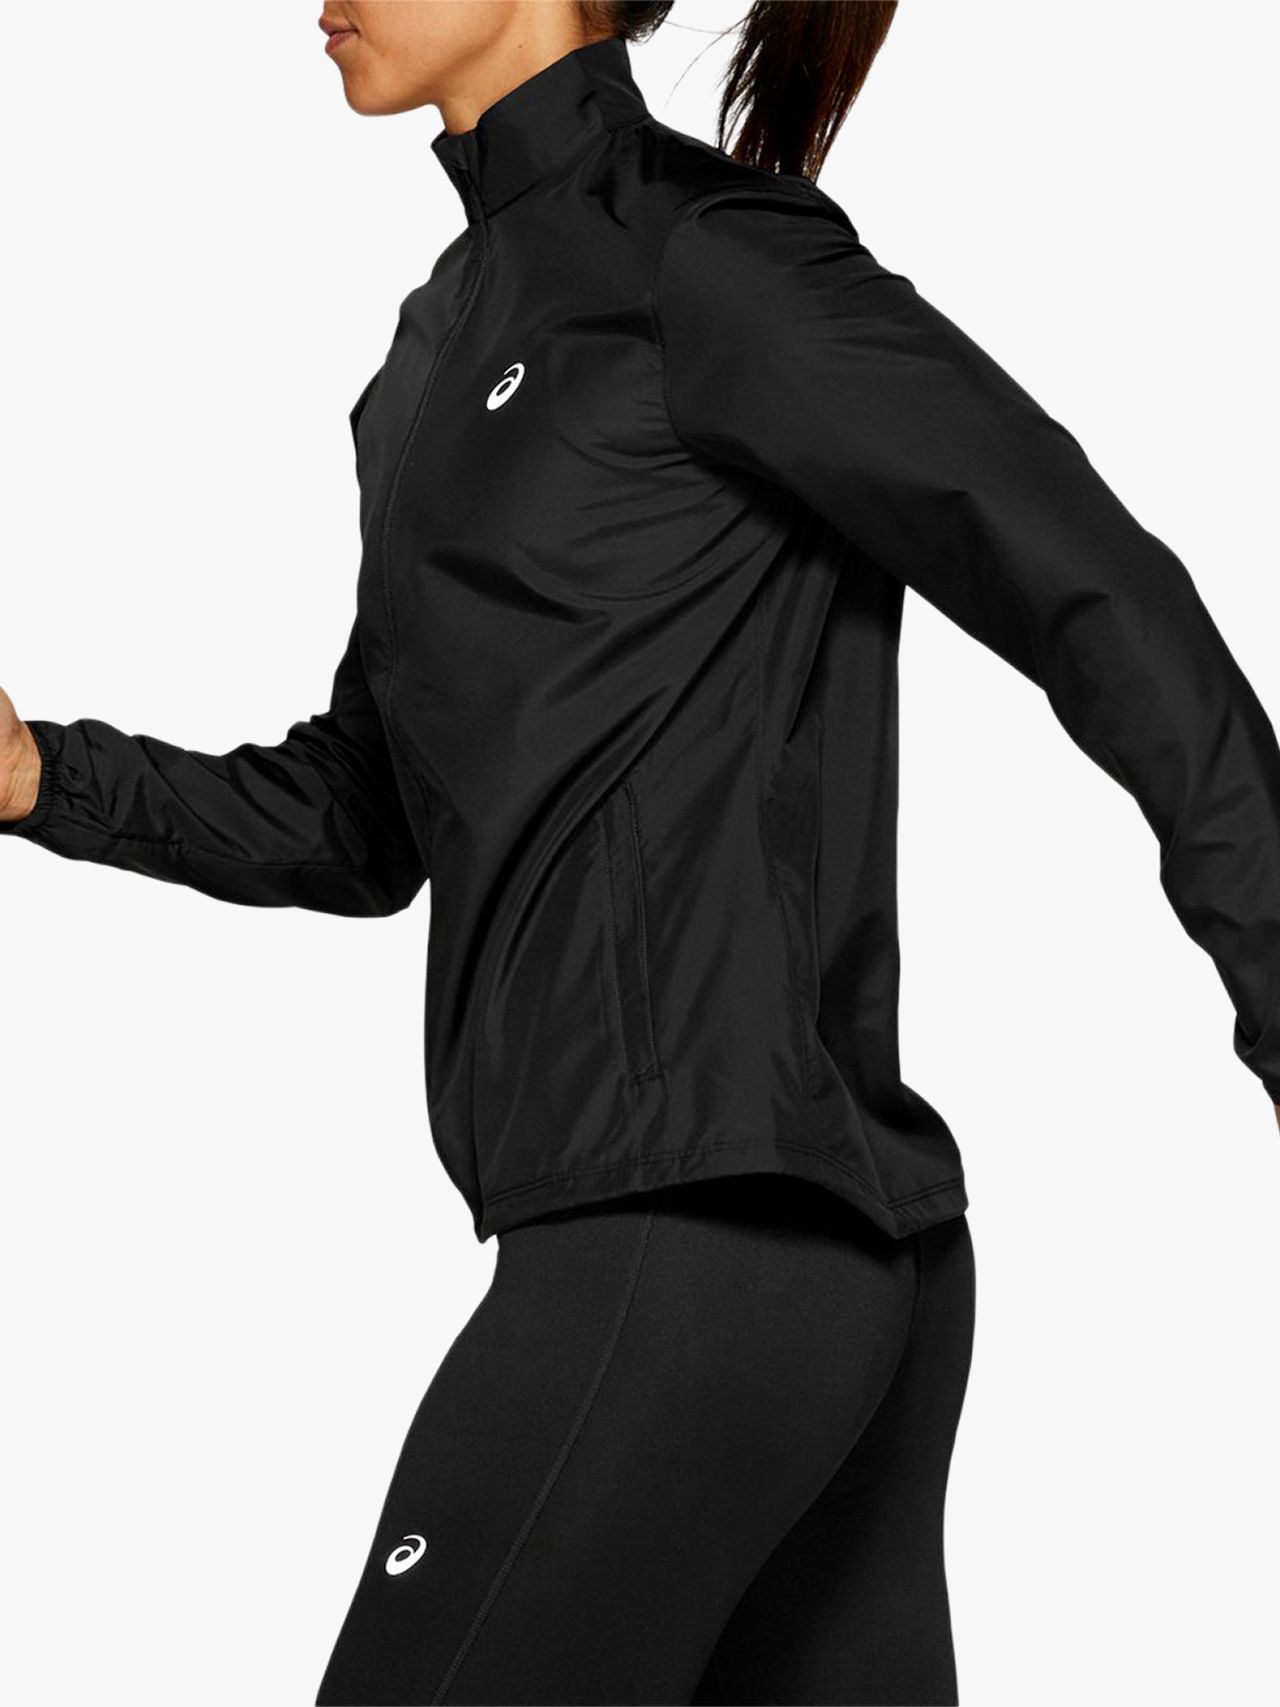 asics woven women's running jacket